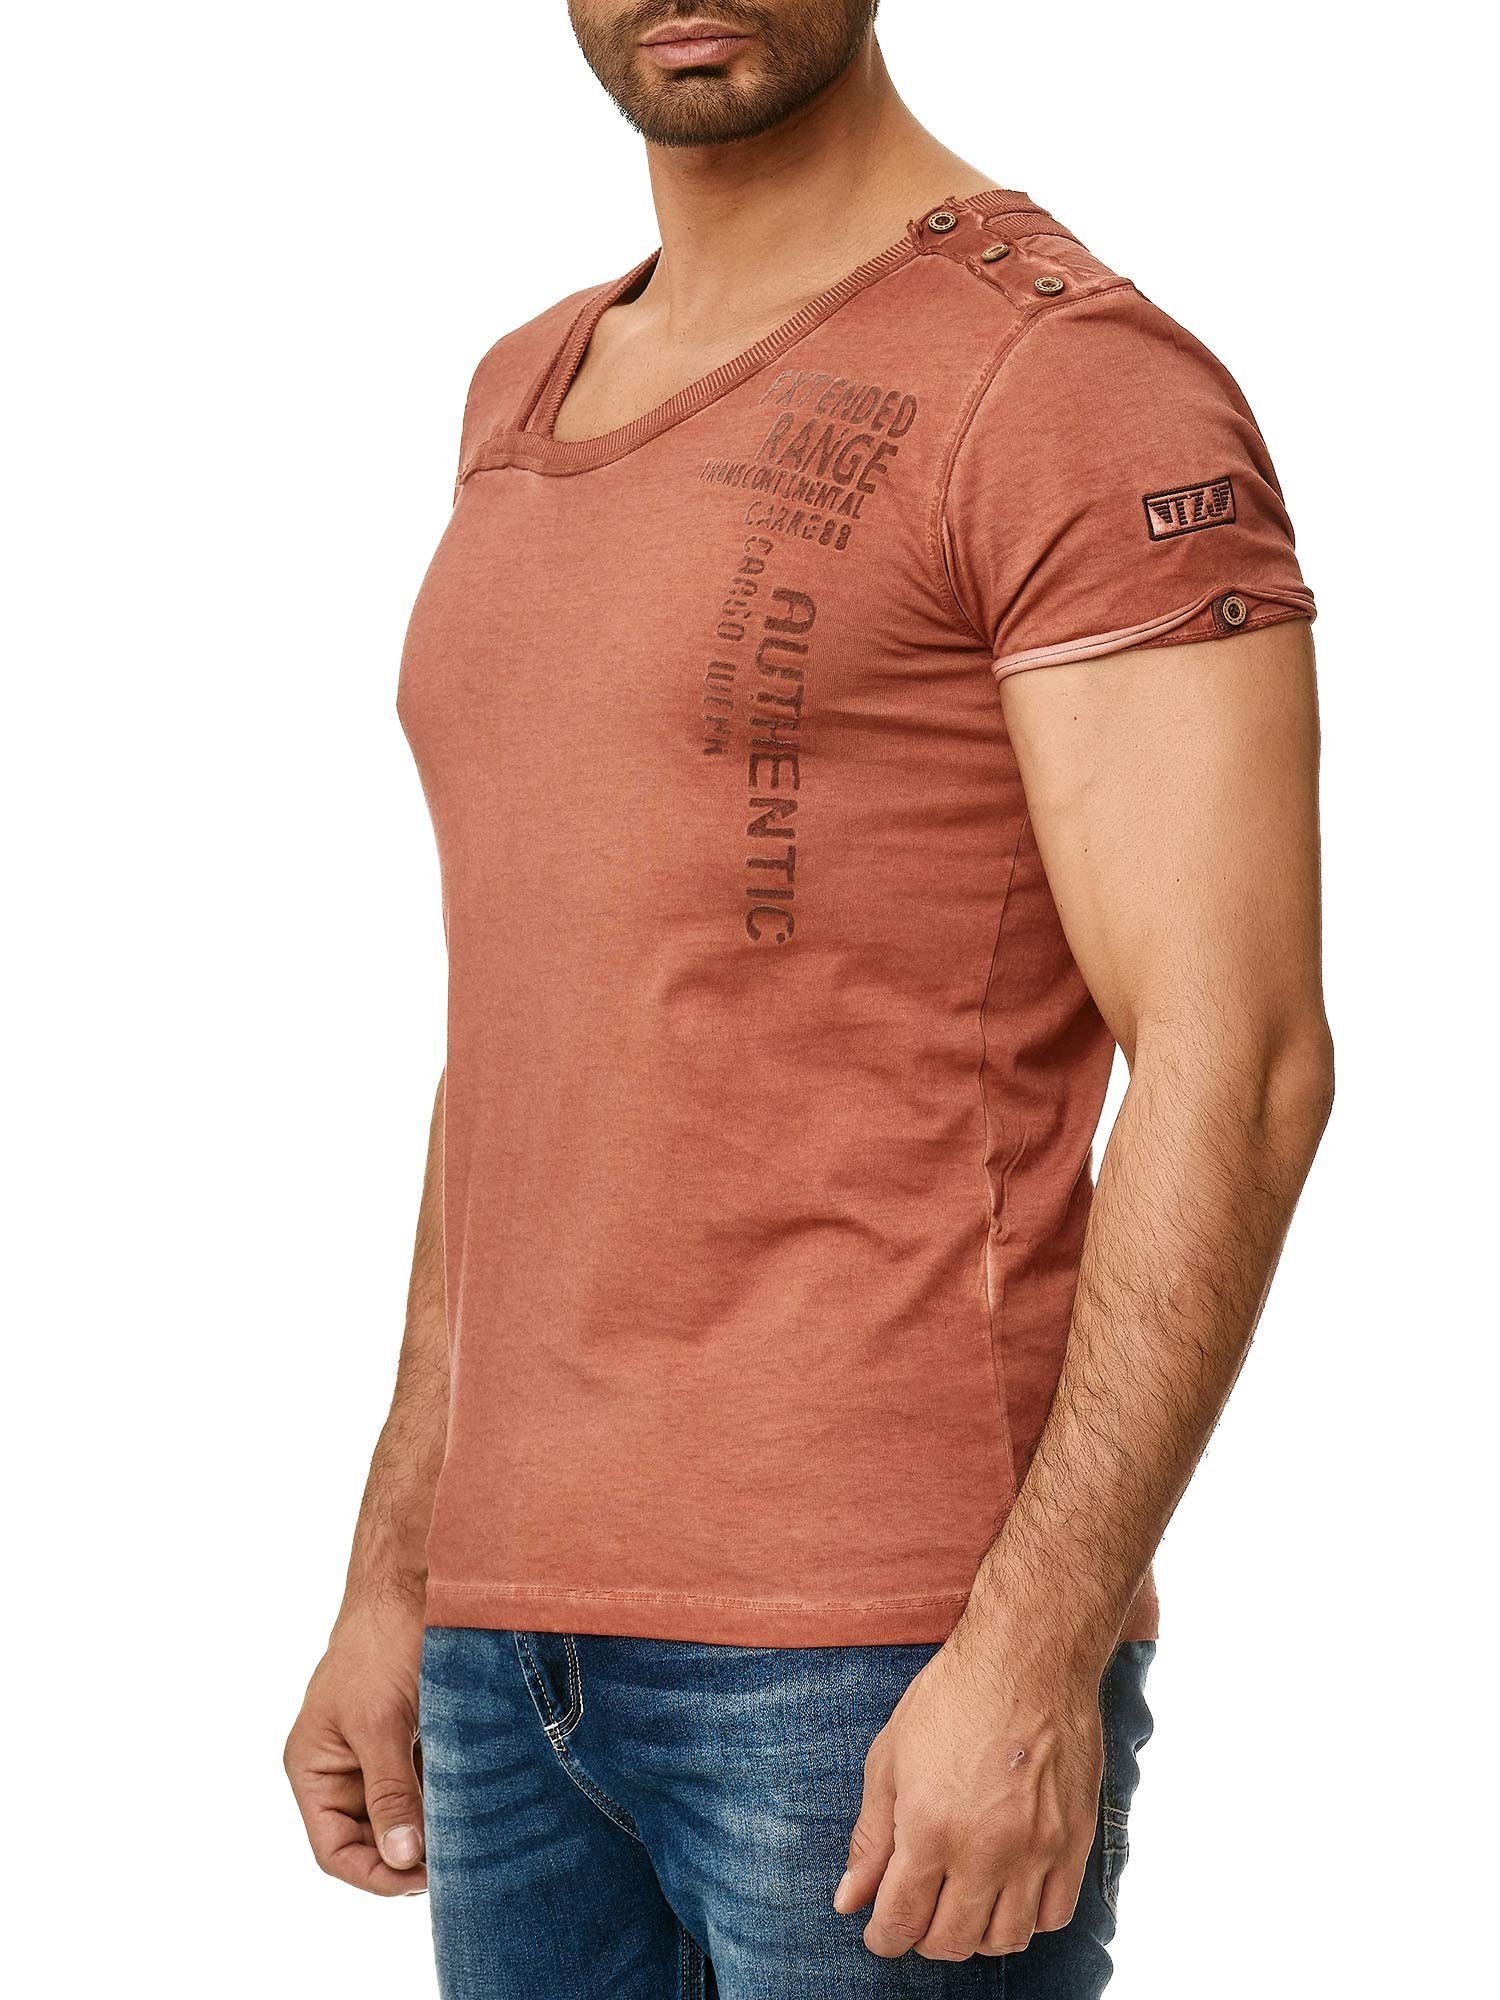 T-Shirt stylischem Knopfleiste mit der Ölwaschung 4022 Tazzio an und in bordeaux trendiger Kragen Schulter